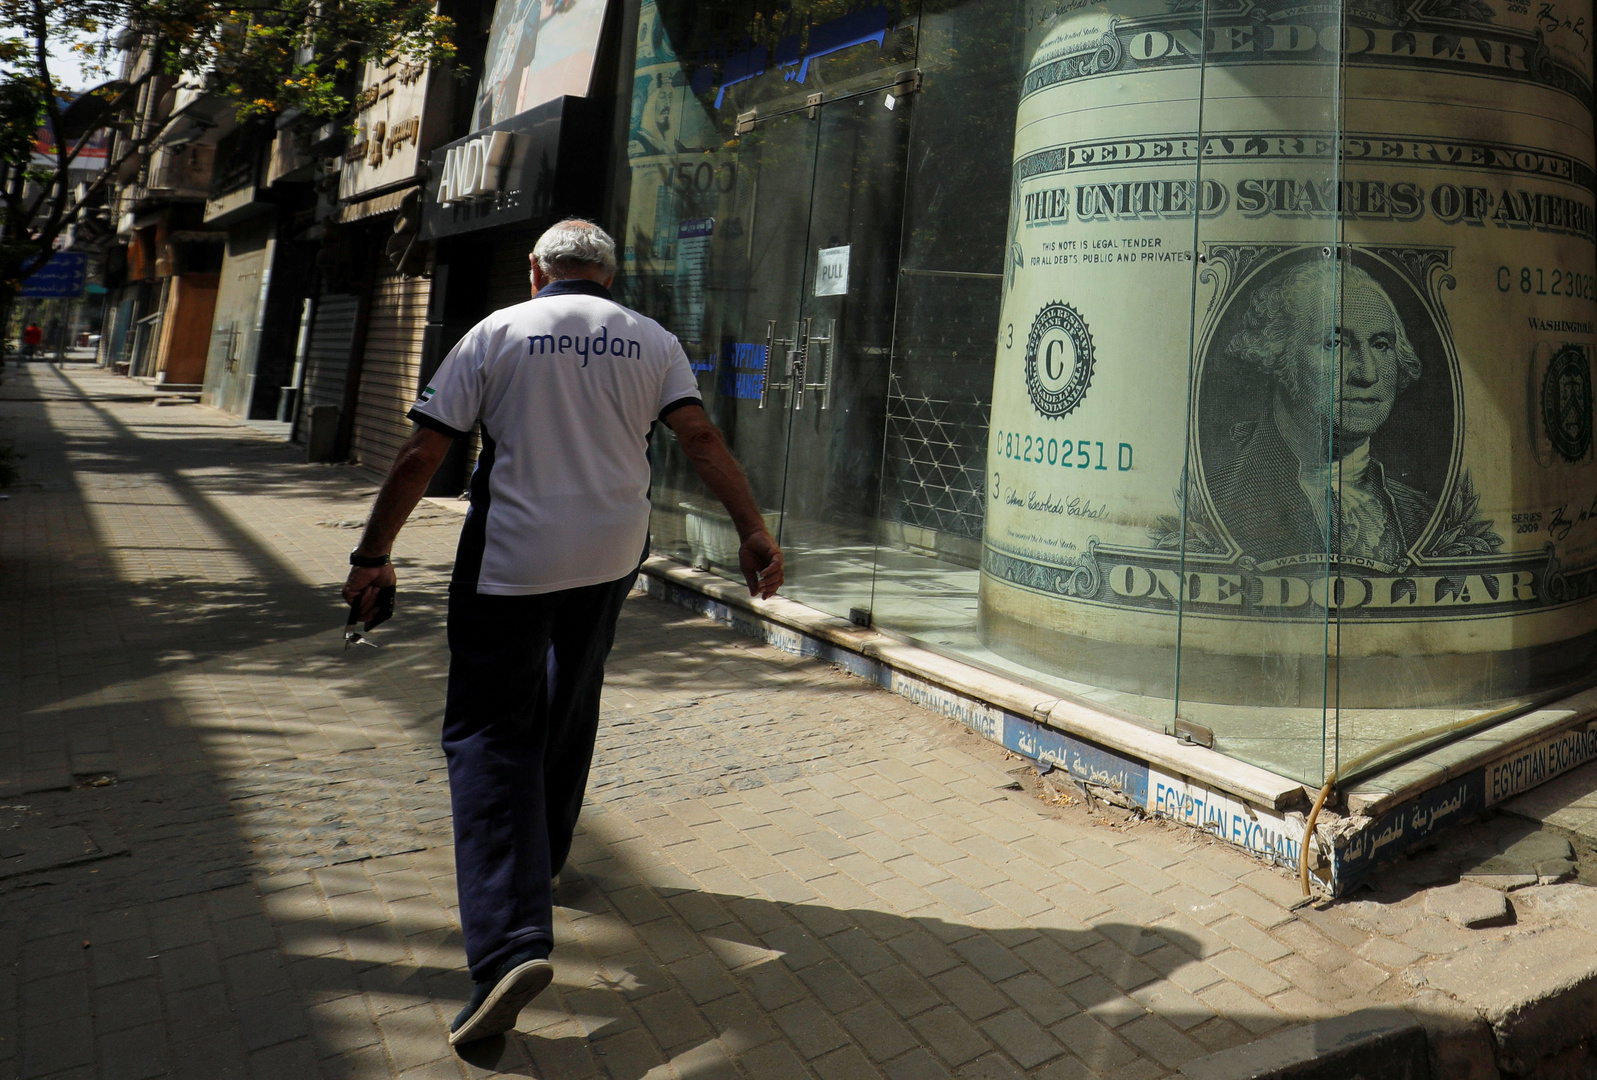 الدولار يكسر حاجز الـ16 جنيها في مصر لأول مرة منذ فترة كبيرة